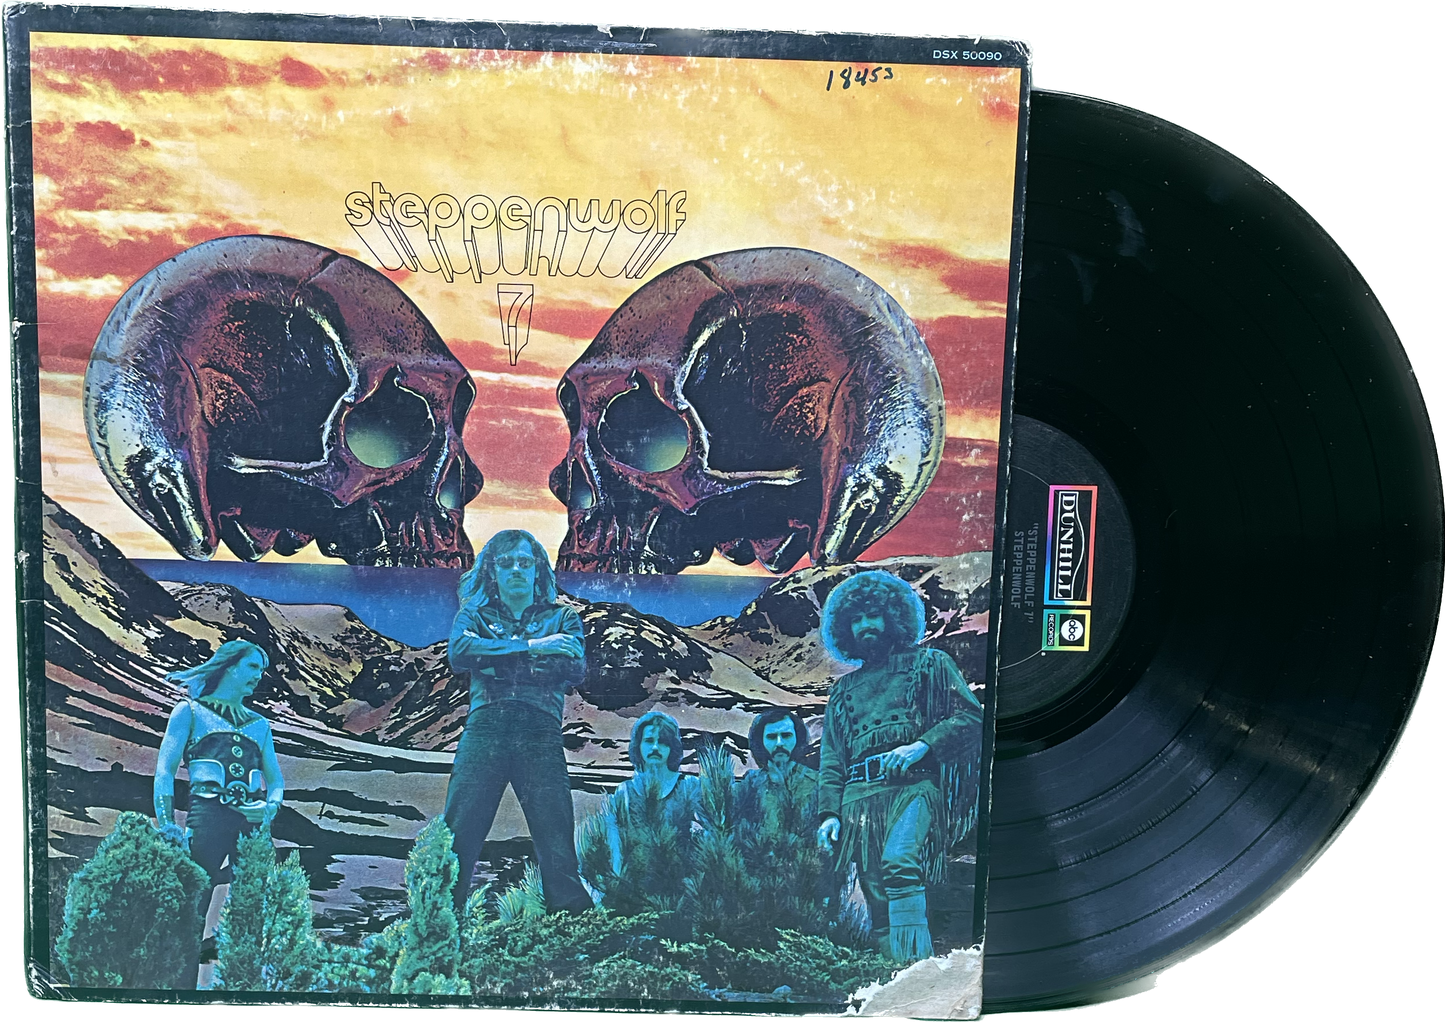 Lp G G Steppenwolf 7 Original Pressing Vinyl Record LP Album Dunhill 50090 1970